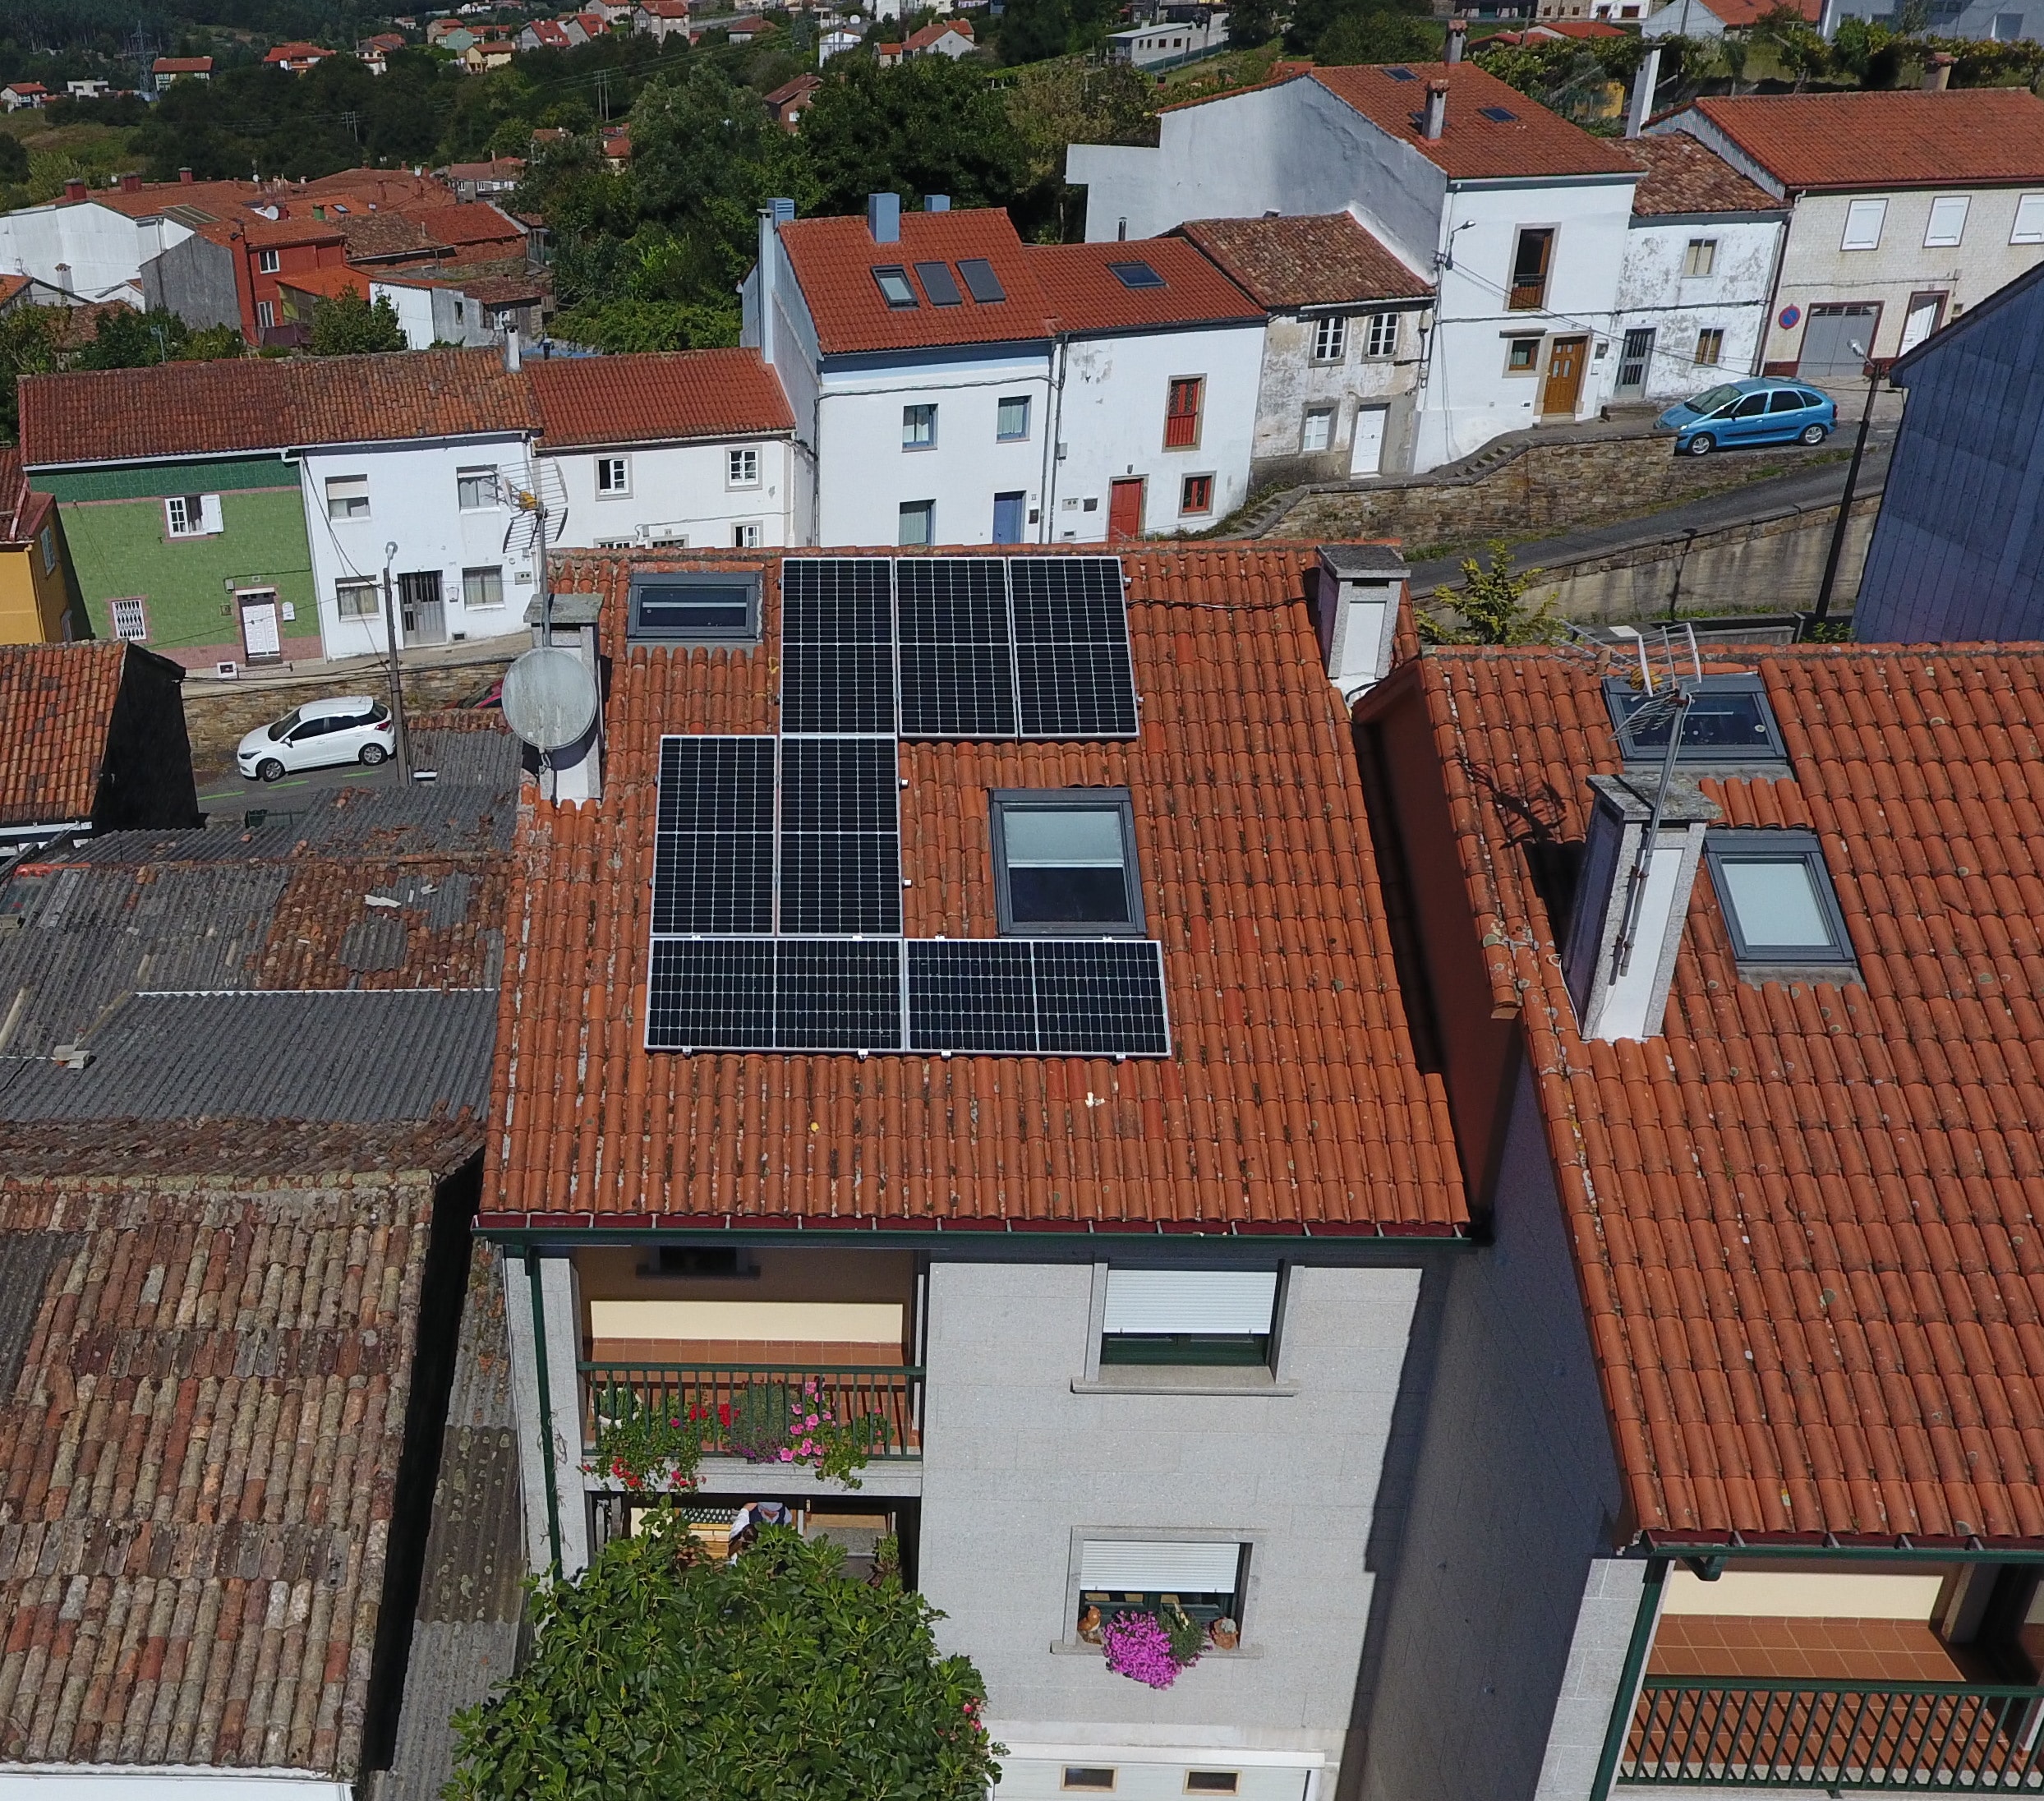 Instalación fotovoltaica para autoconsumo vivienda